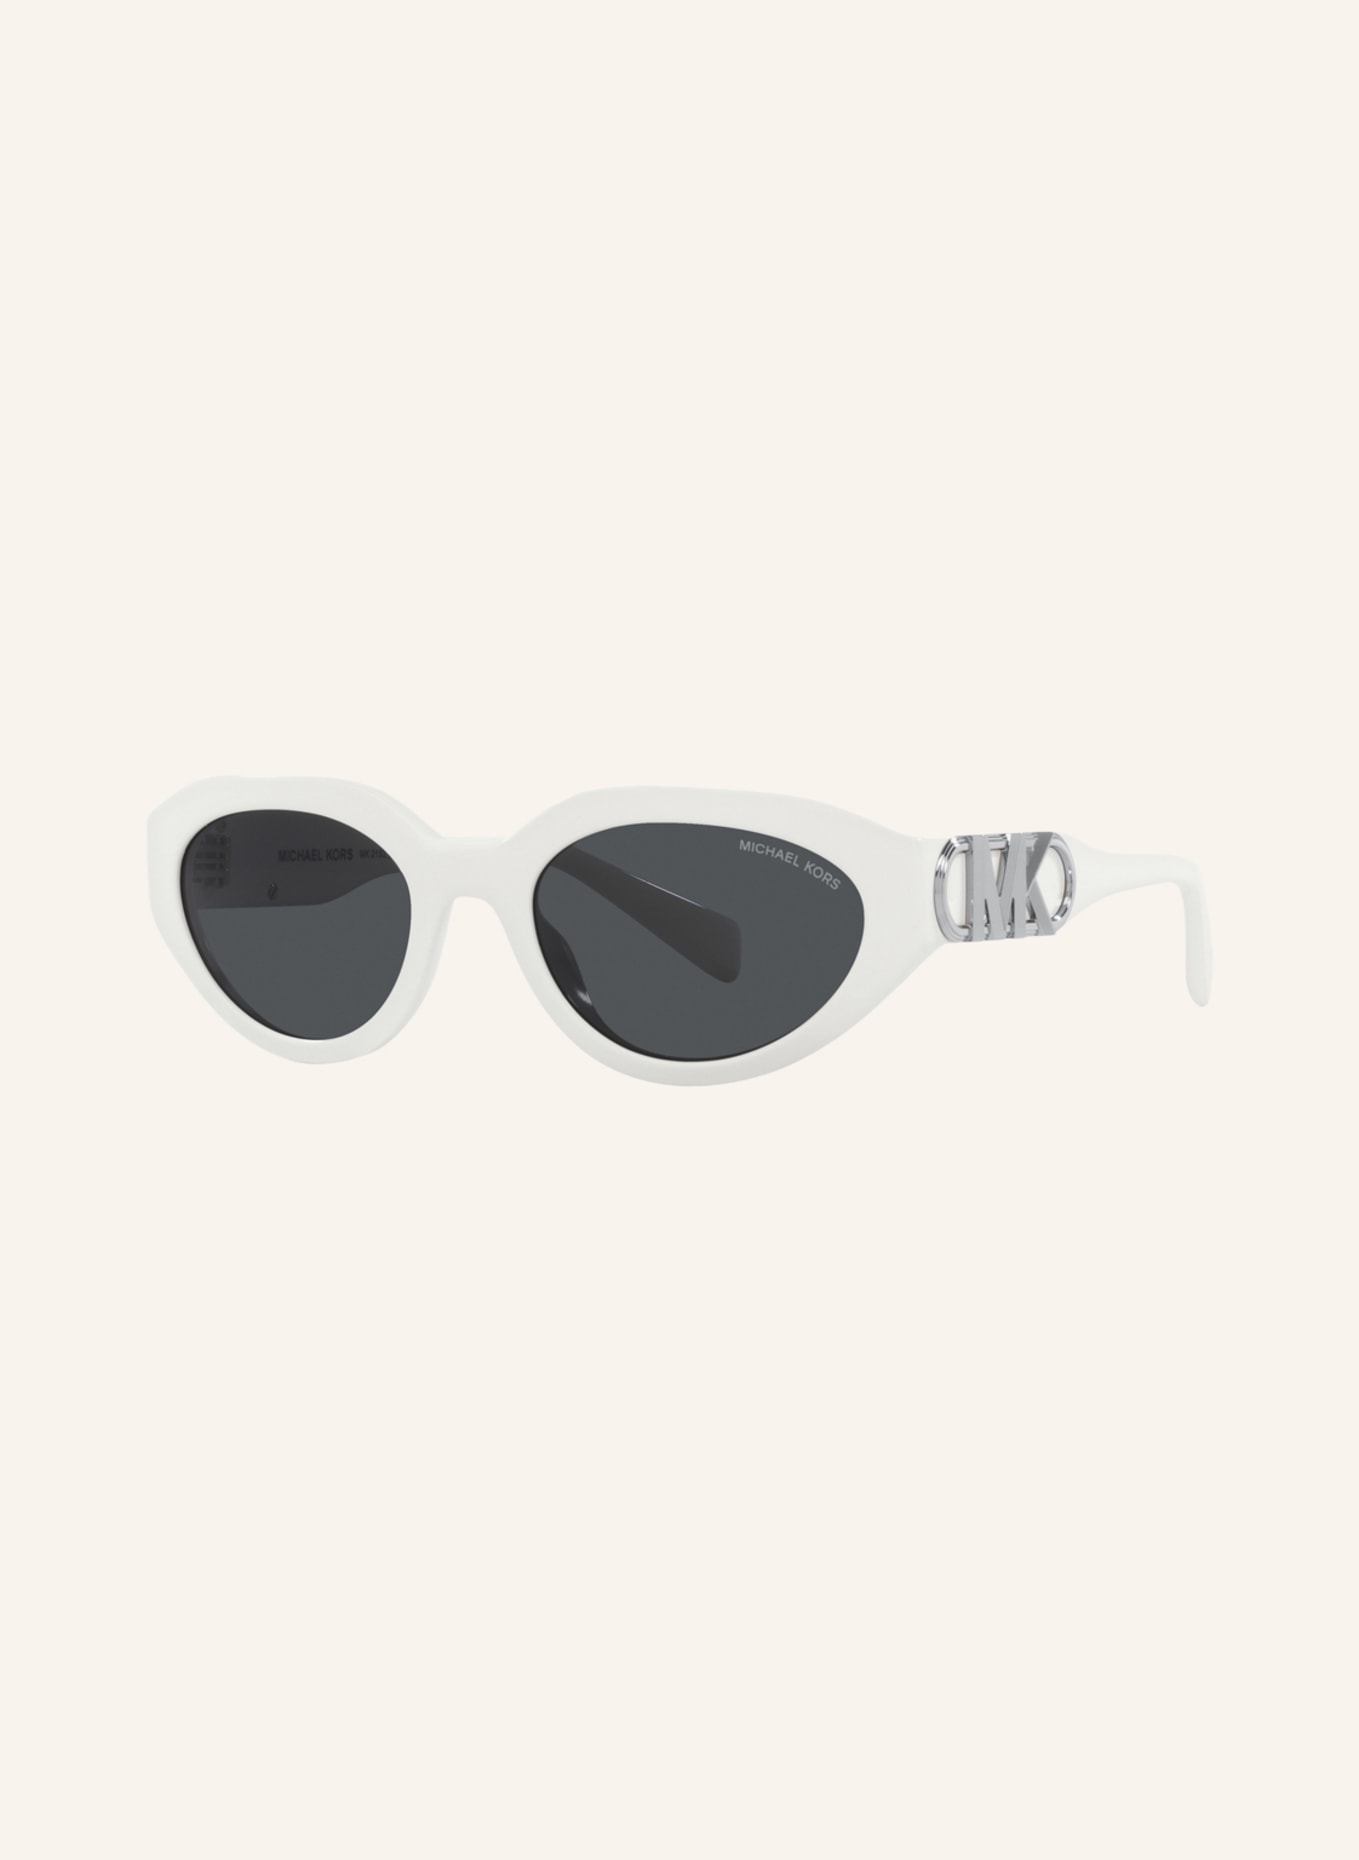 MICHAEL KORS Sonnenbrille MK2192, Farbe: 310087 - WEISS/ DUNKELGRAU (Bild 1)